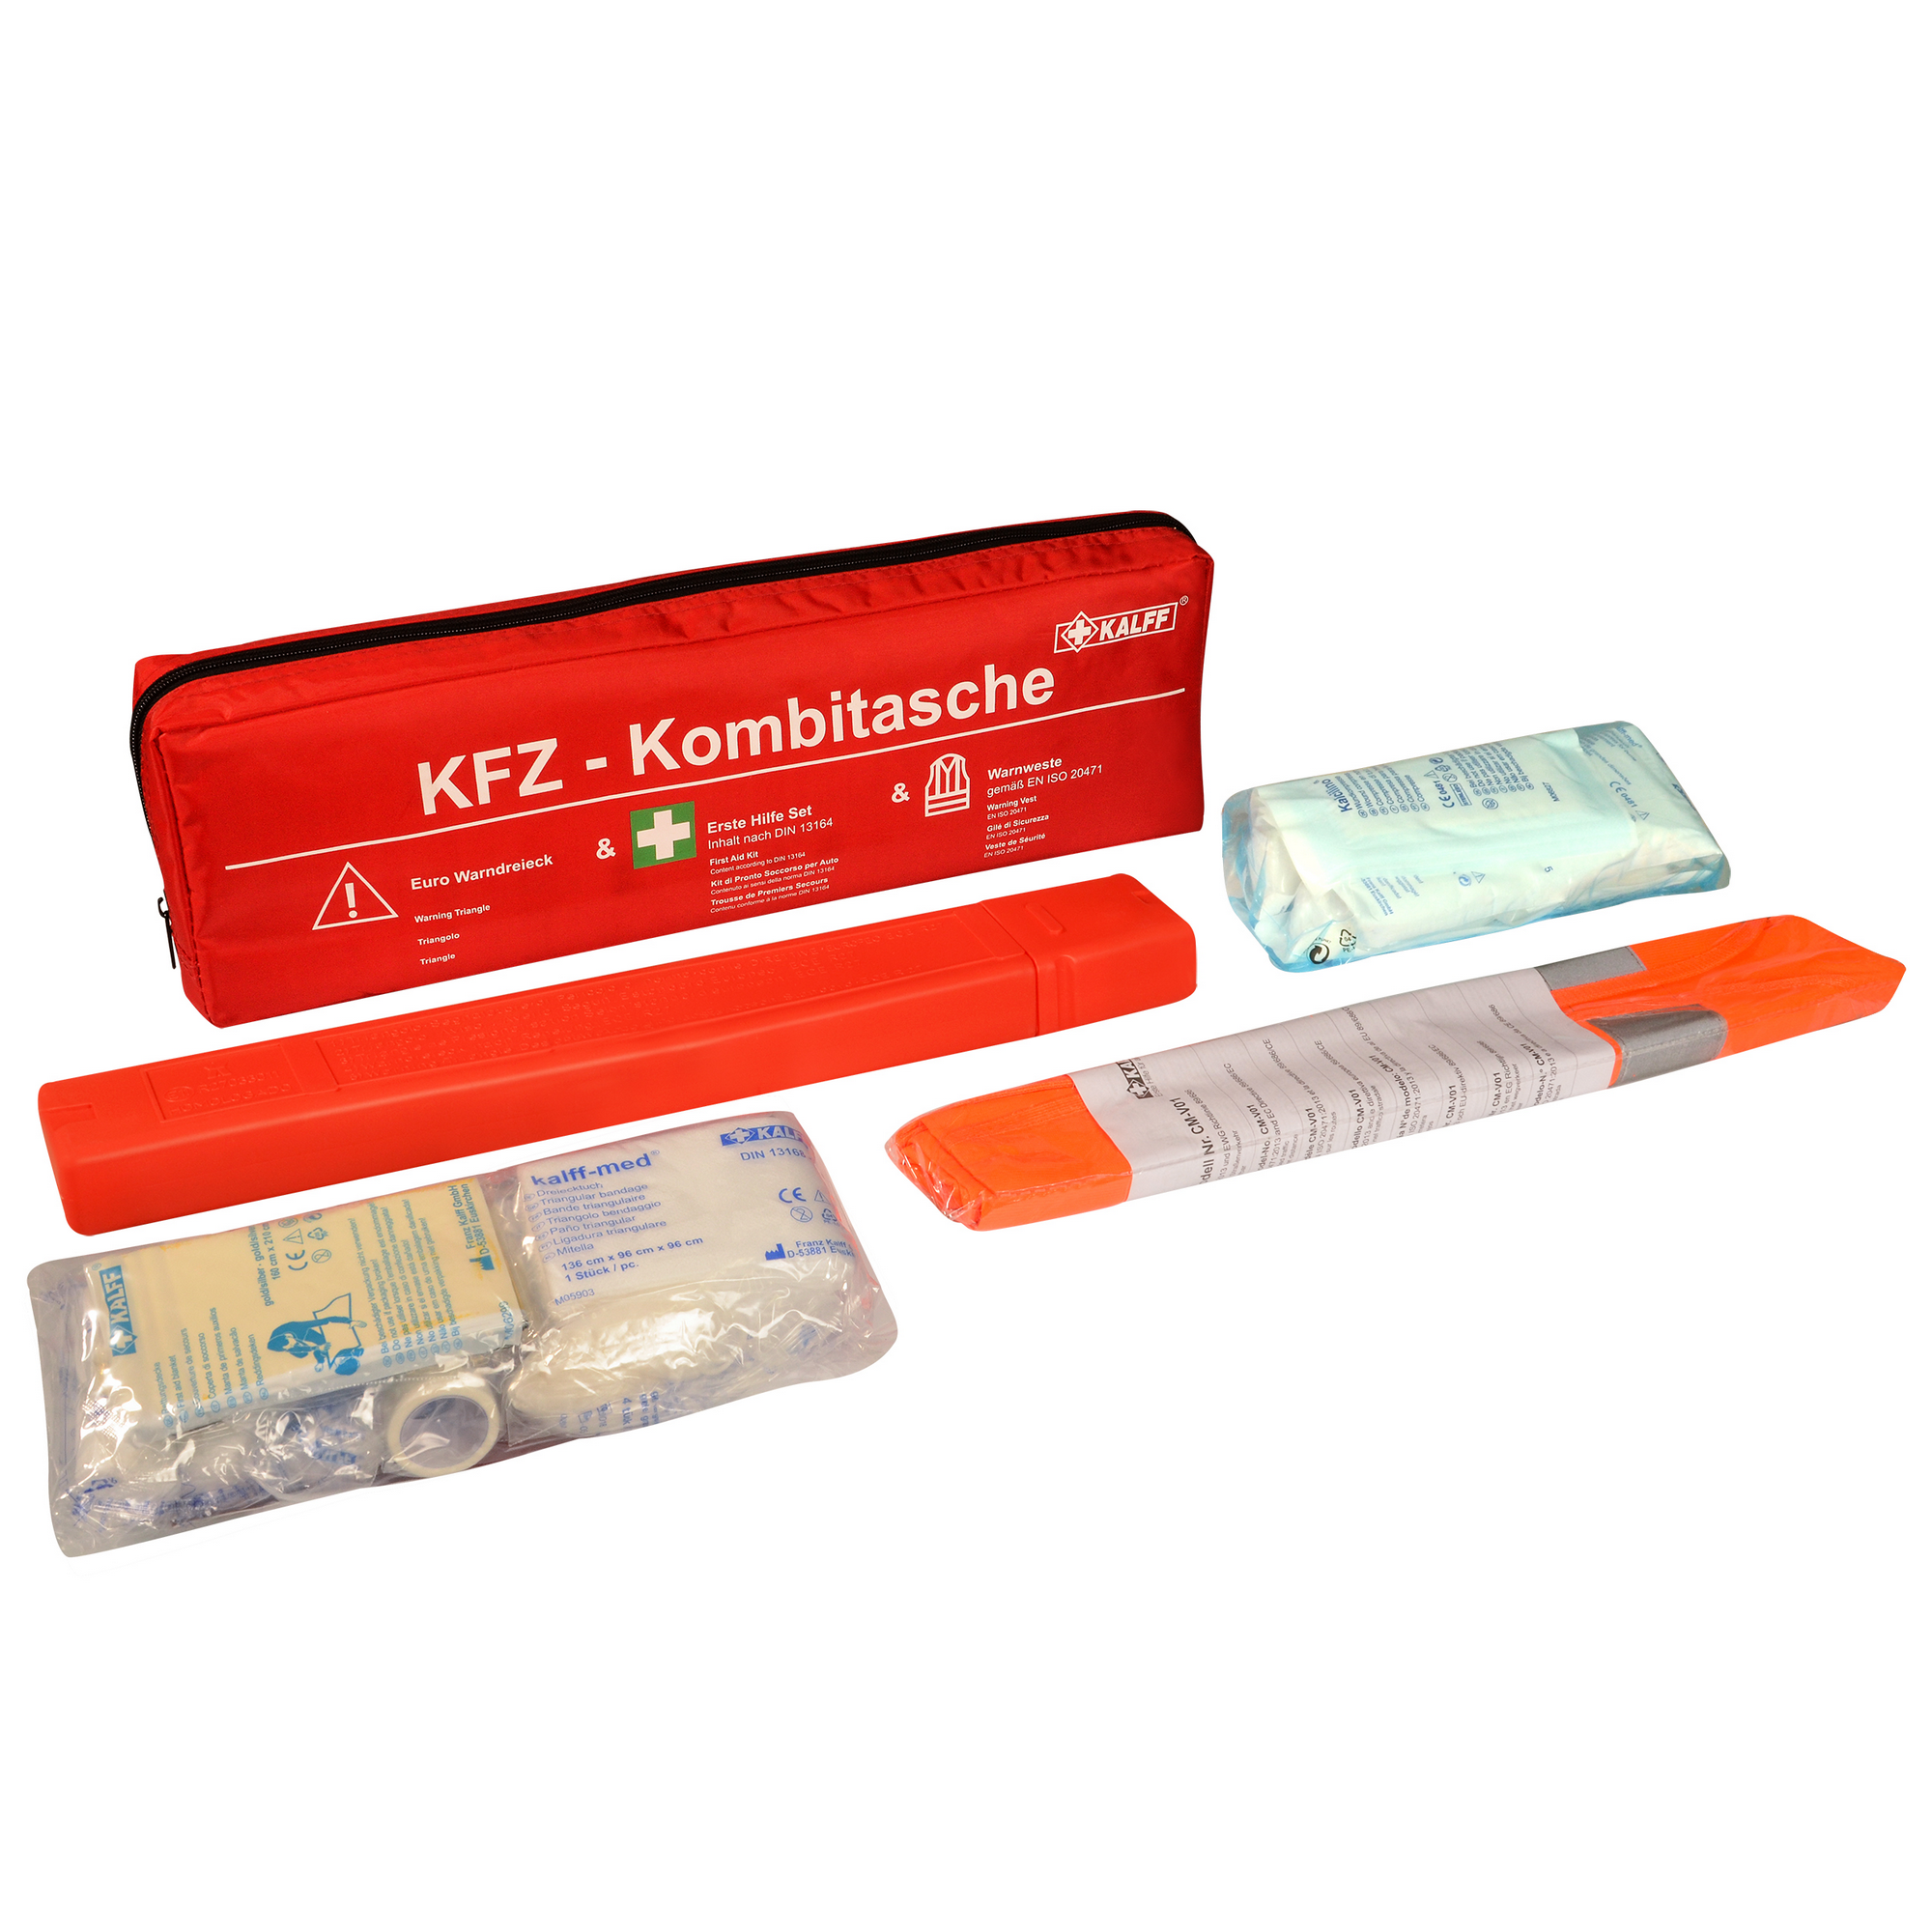 Kombi-Angebot Warnweste + Verbandtasche mit Warndreieck